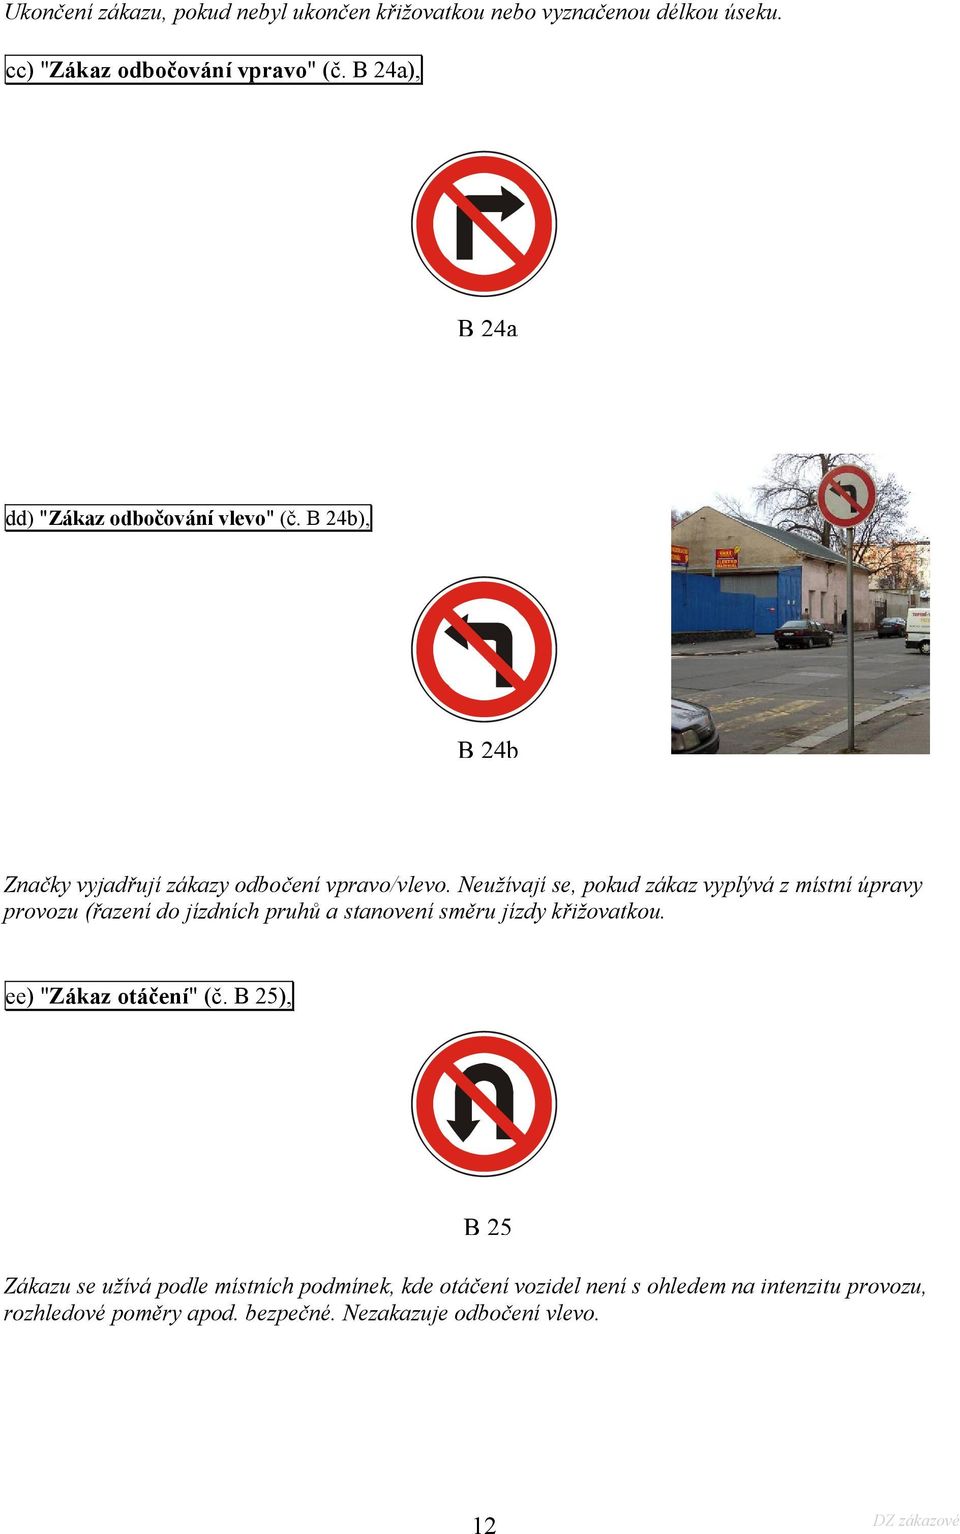 Neužívají se, pokud zákaz vyplývá z místní úpravy provozu (řazení do jízdních pruhů a stanovení směru jízdy křižovatkou.